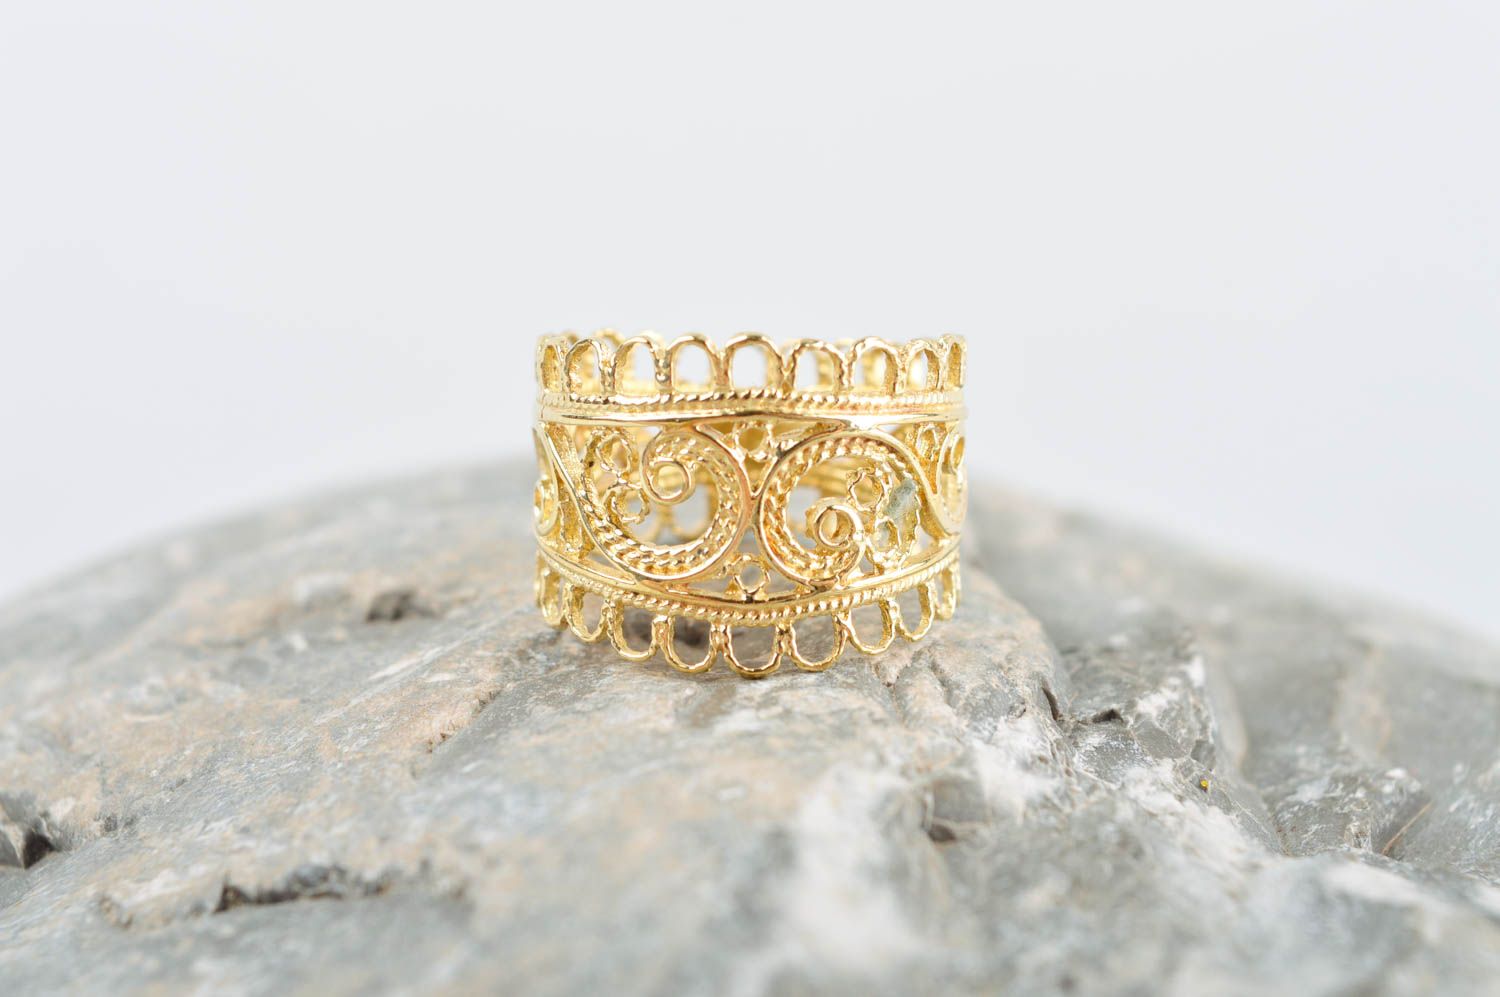 Кольцо ручной работы необычное украшение из латуни оригинальное модное кольцо  фото 1